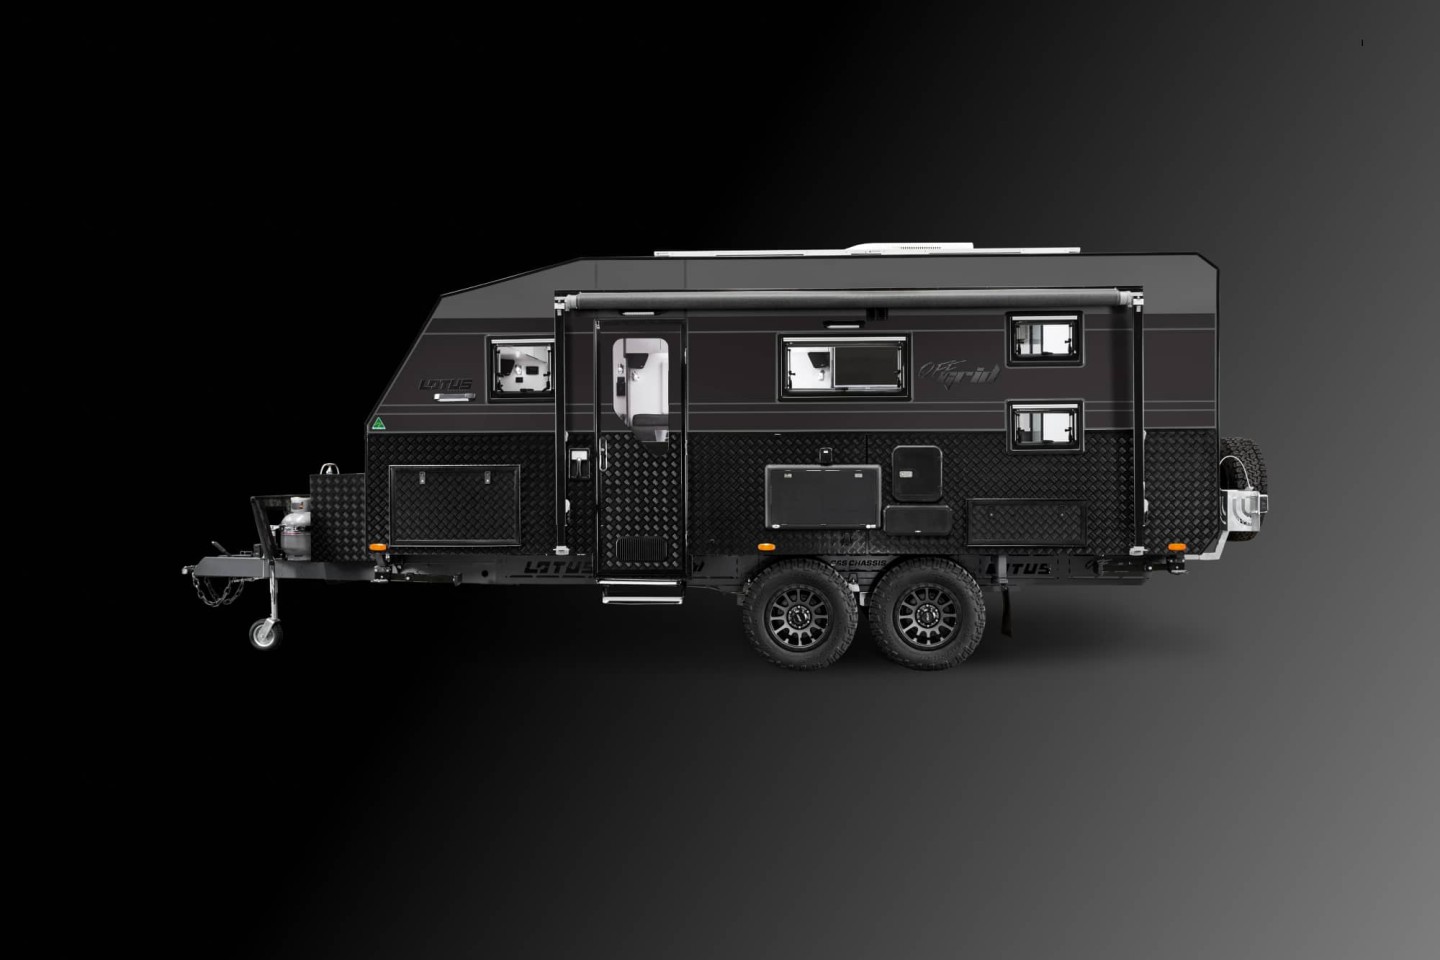 Lotus Caravans Off Grid Wohnwagen: Außen grob, innen Luxus